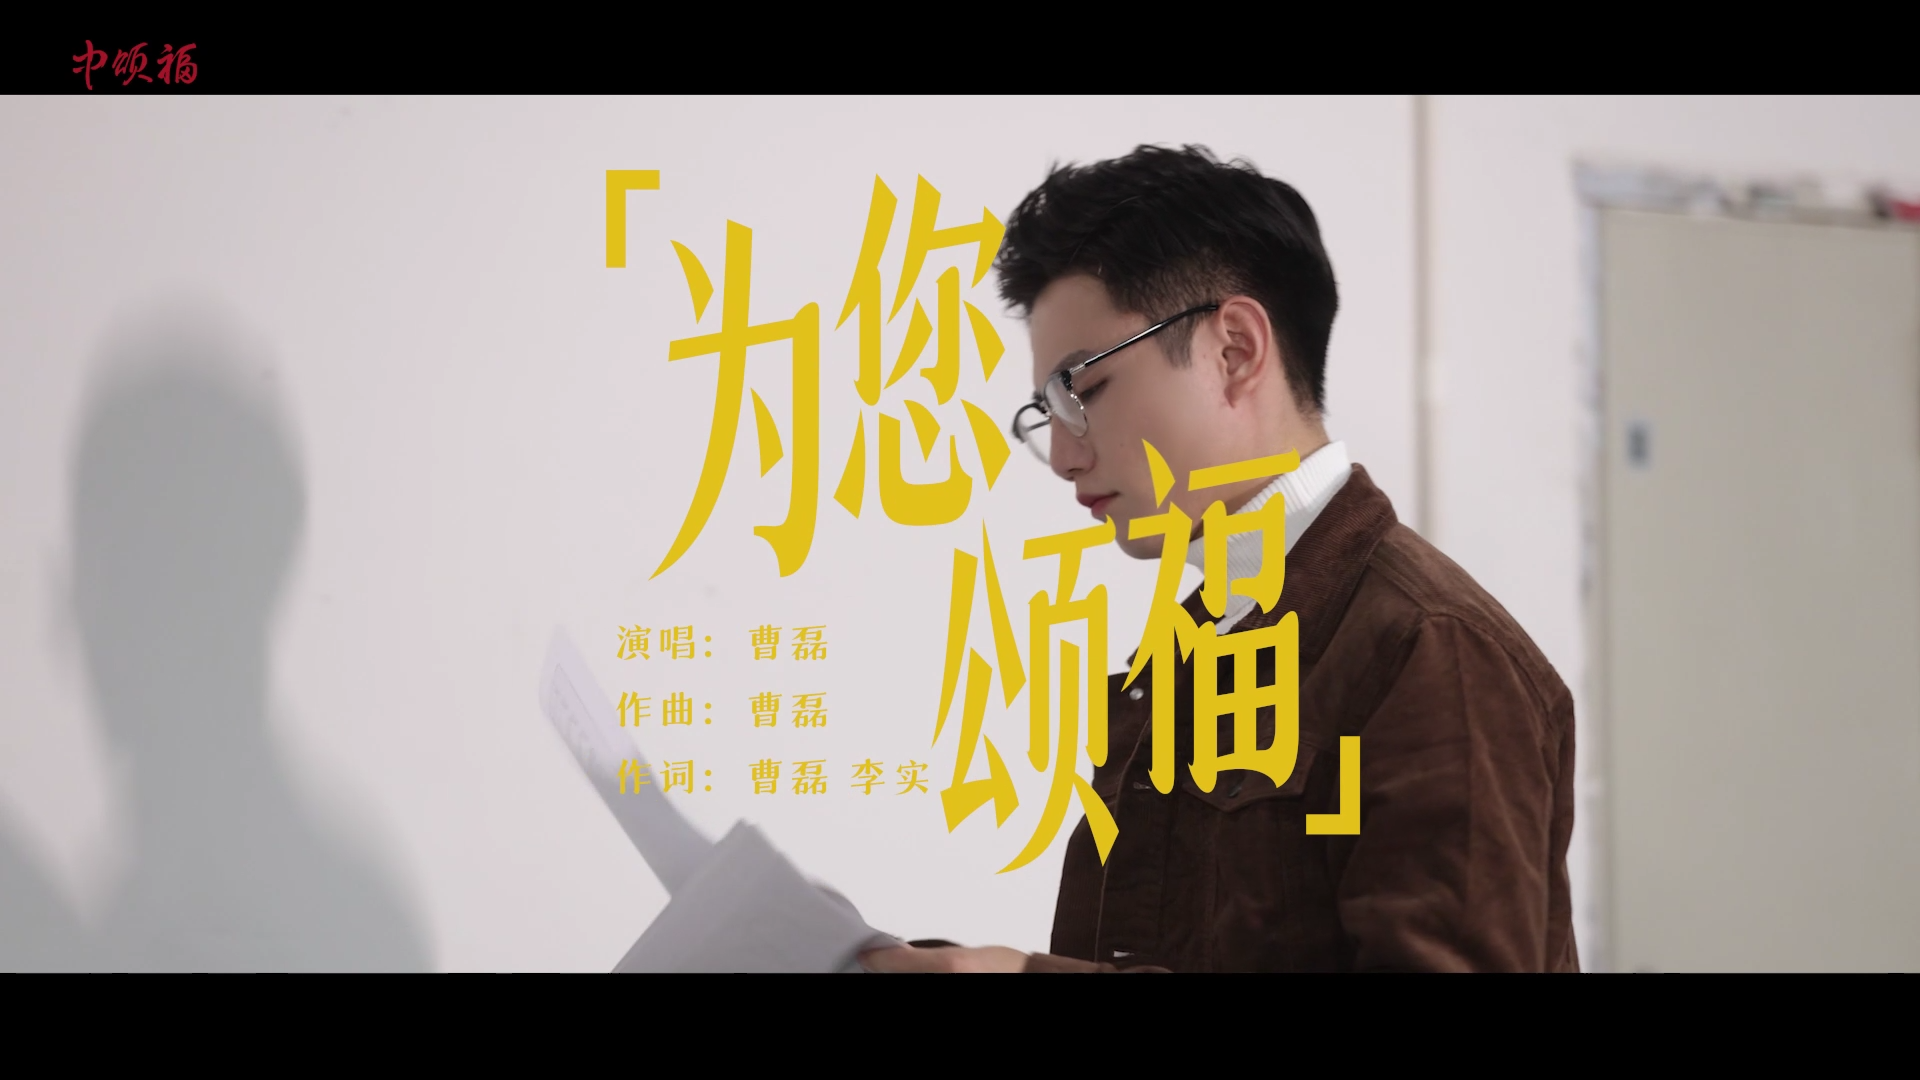 由盟大鸟人团队制作、出演的《为您颂福》剧情版MV，正式首次发布!